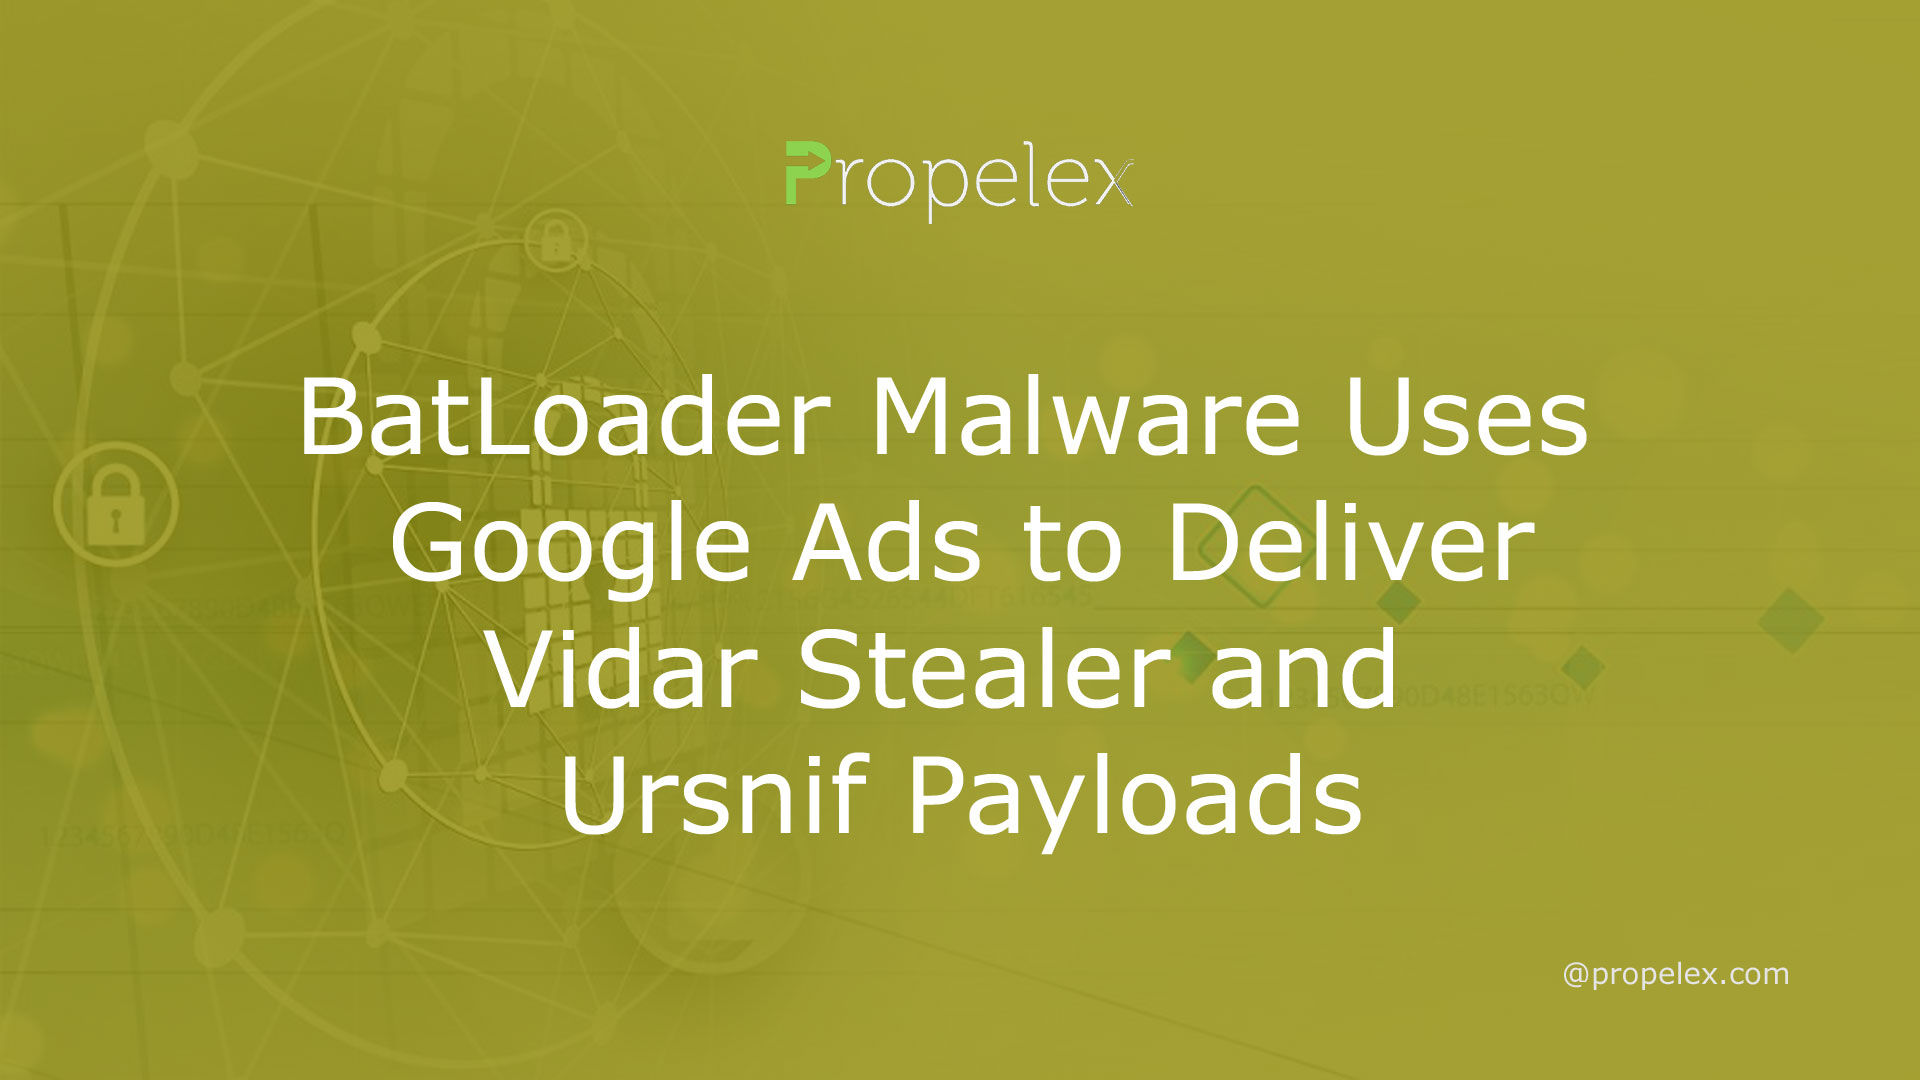 BatLoader Malware Uses Google Ads to Deliver Vidar Stealer and Ursnif Payloads